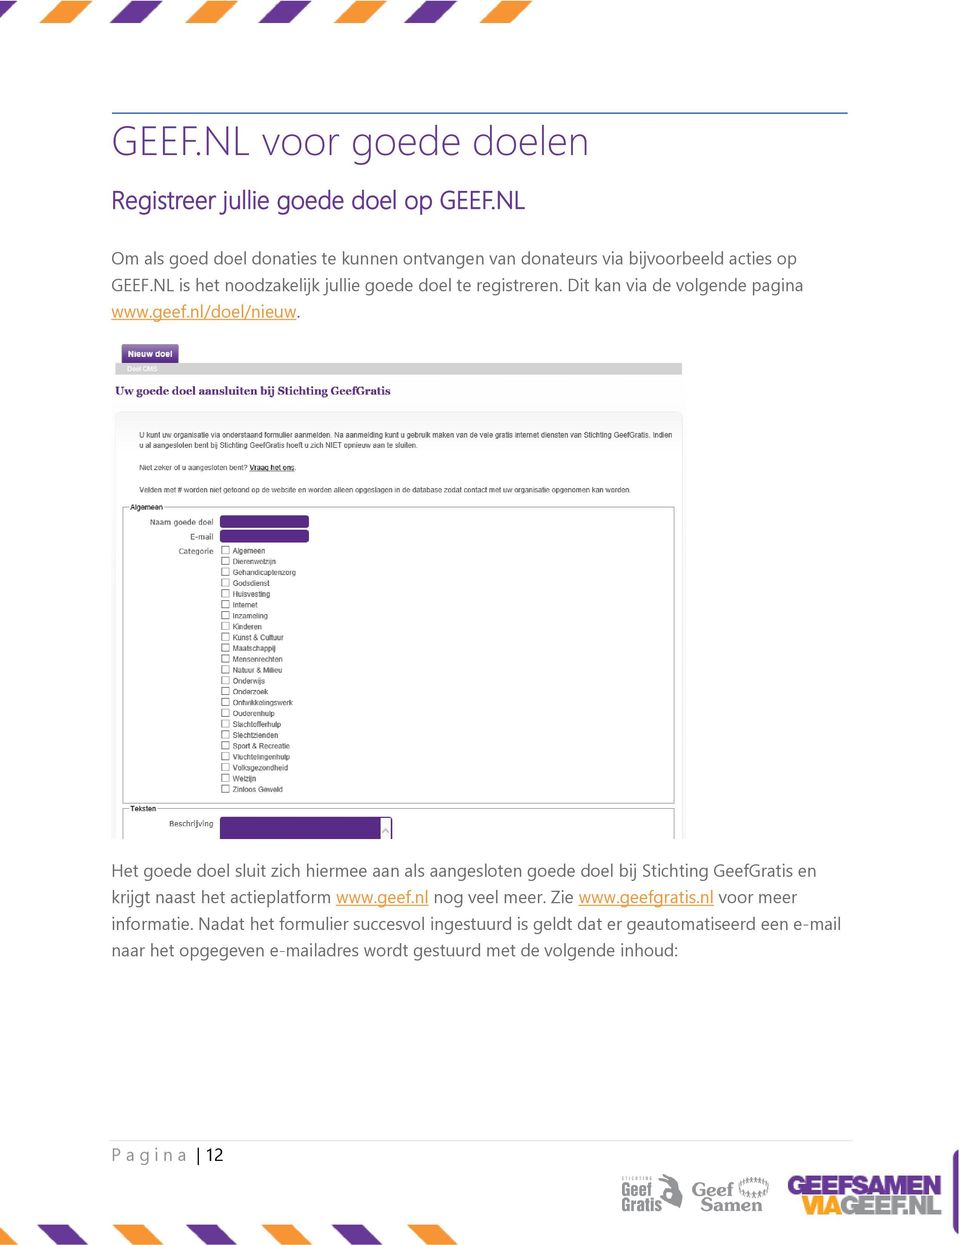 Het goede doel sluit zich hiermee aan als aangesloten goede doel bij Stichting GeefGratis en krijgt naast het actieplatform www.geef.nl nog veel meer. Zie www.